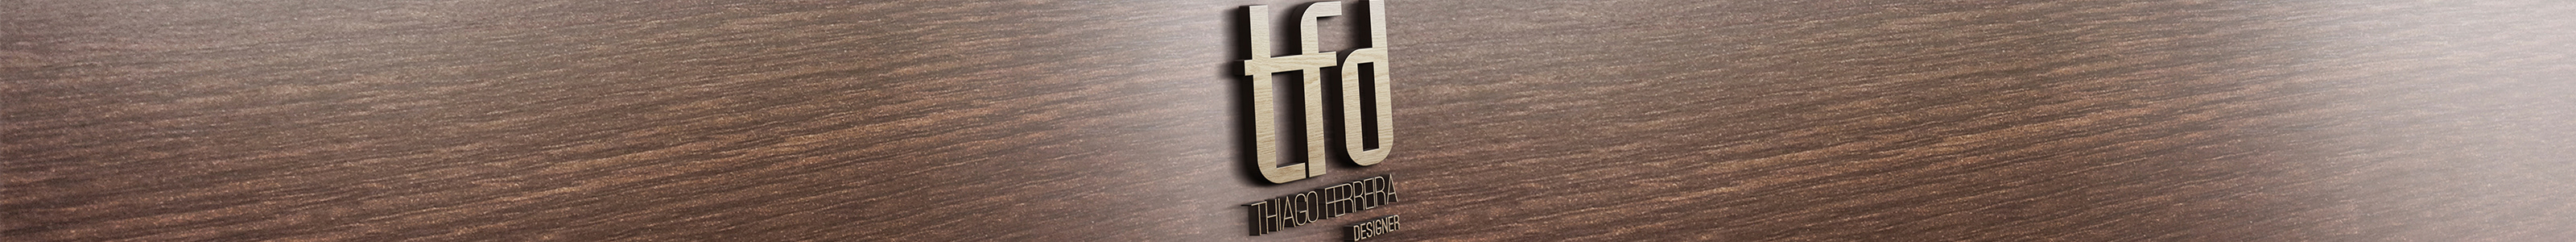 Thiago Ferreira 的個人檔案橫幅